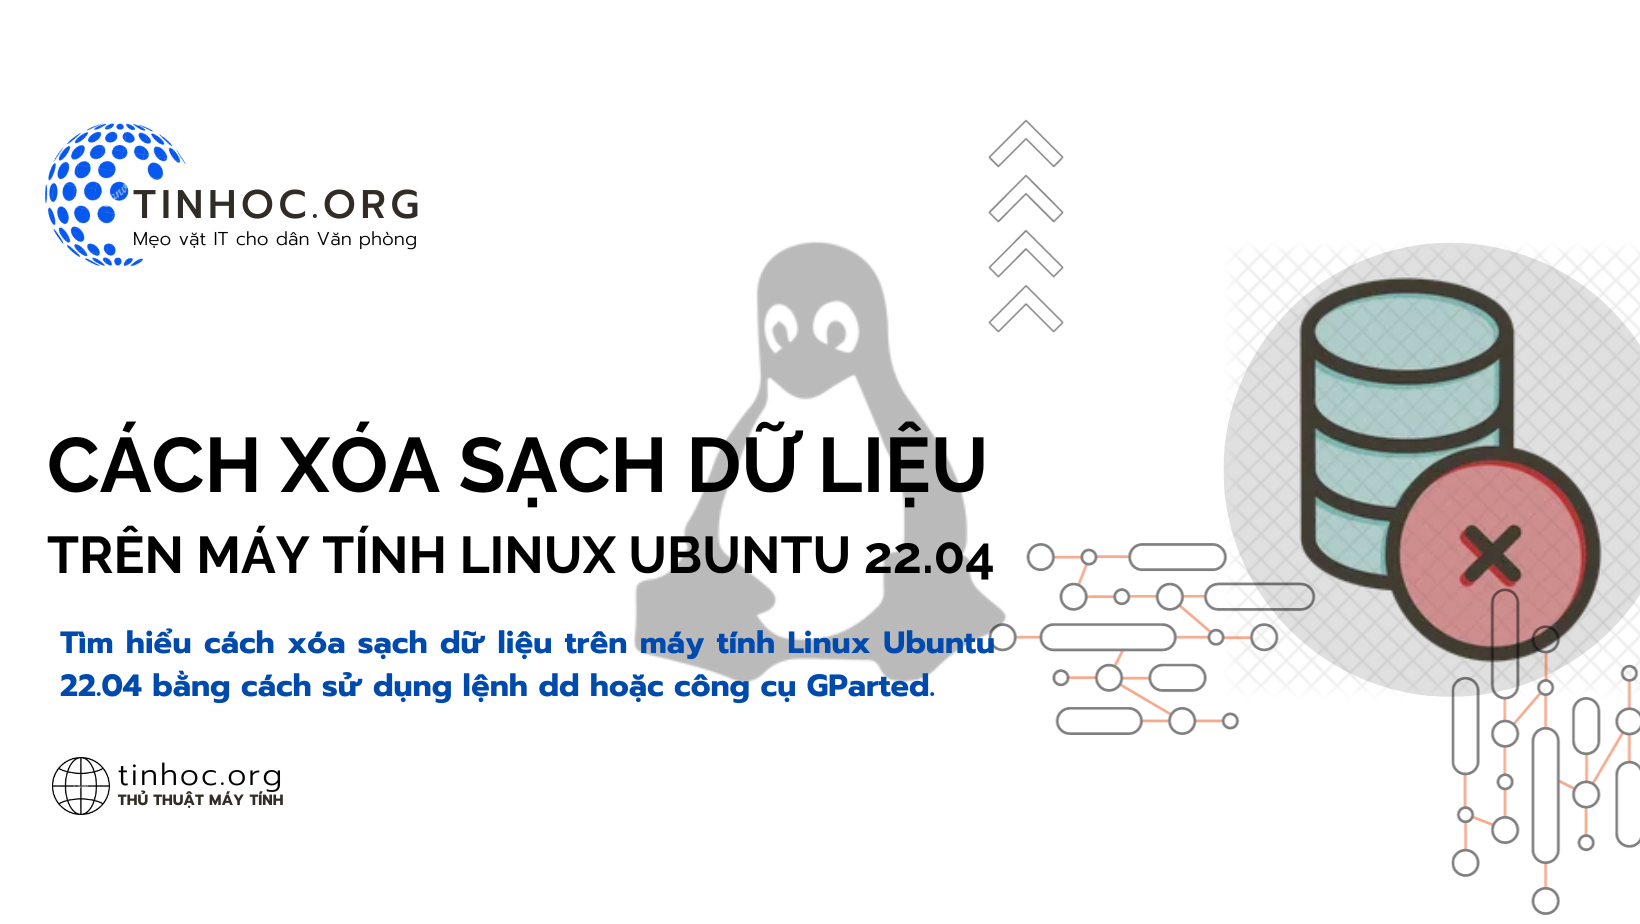 Tìm hiểu cách xóa sạch dữ liệu trên máy tính Linux Ubuntu 22.04 bằng cách sử dụng lệnh dd hoặc công cụ GParted.